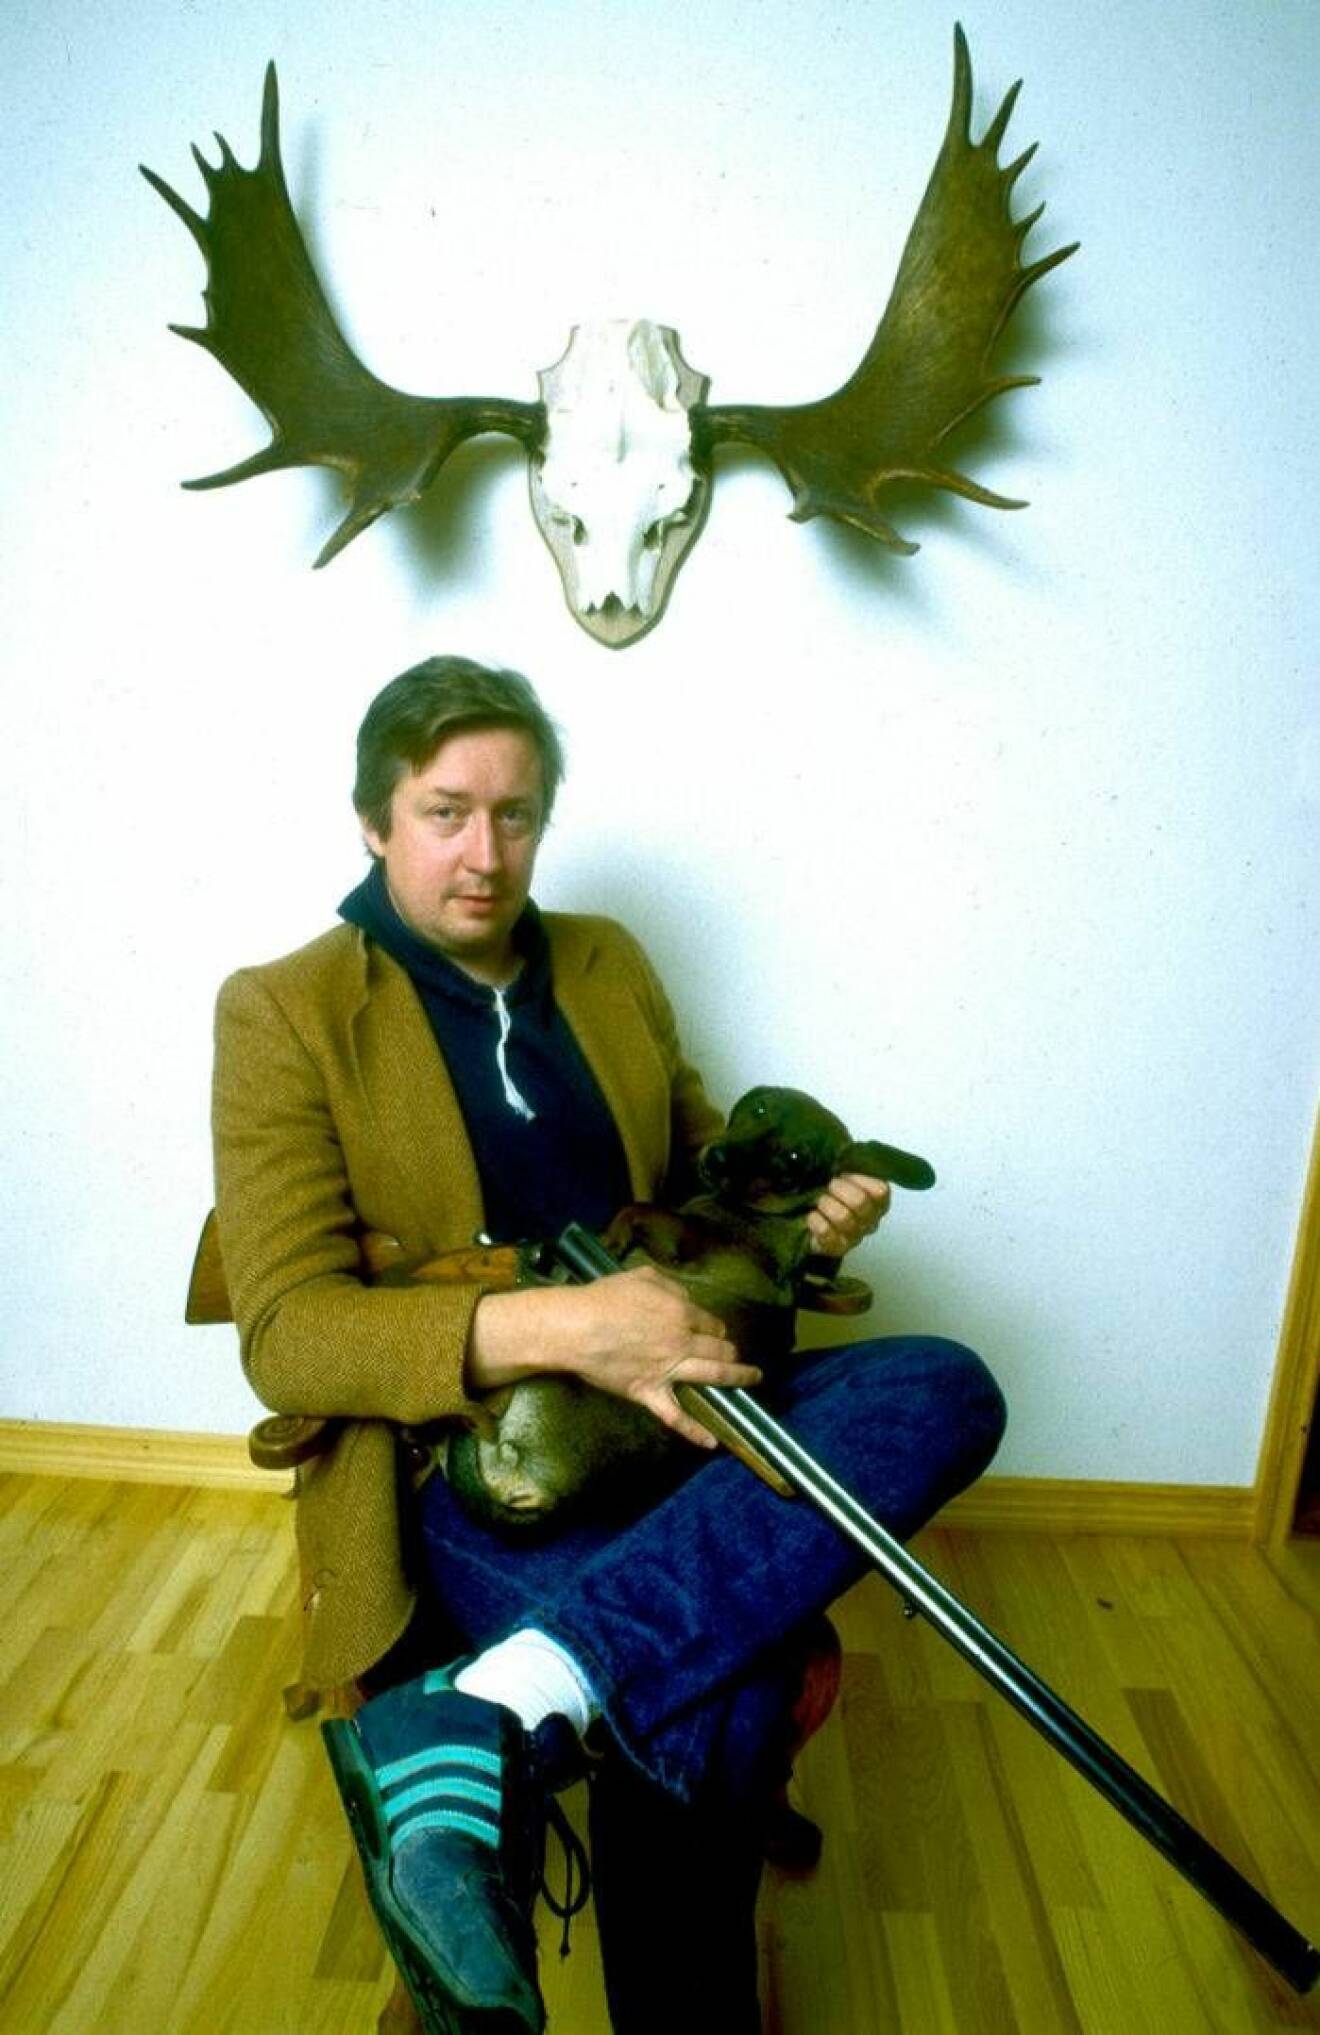 Leif GW Persson sittandes på stol inomhus med jaktgevär i knäet.